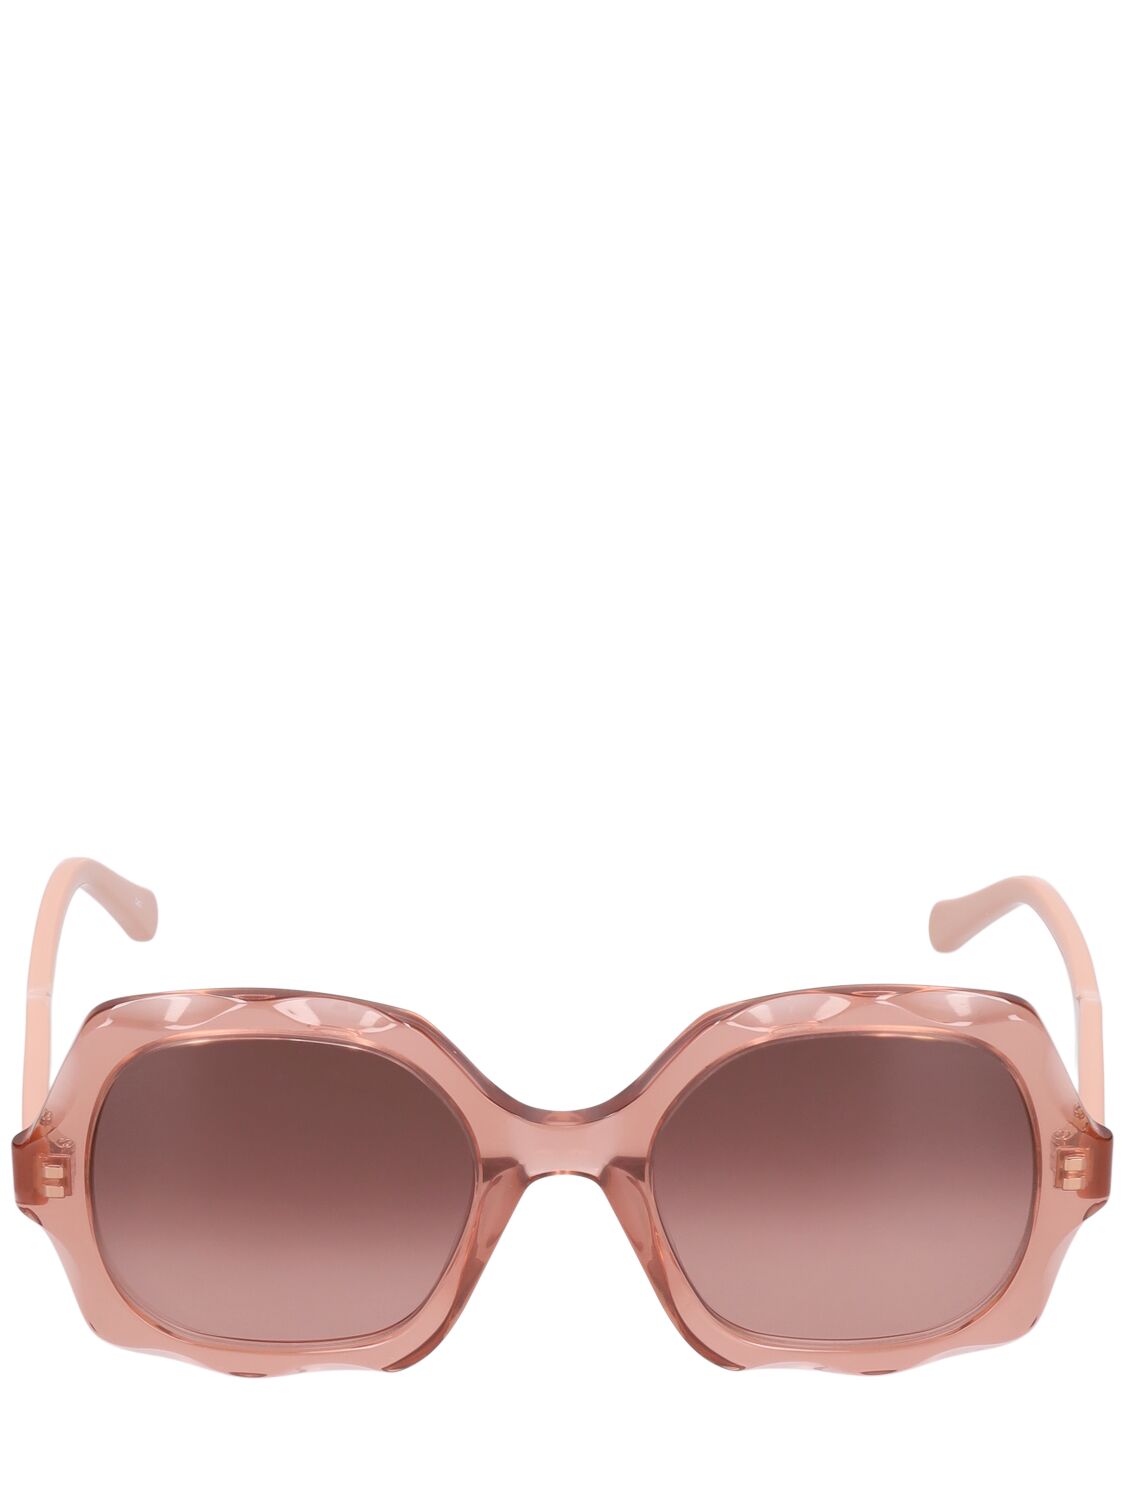 Chloé Scalloped Square Sunglasses In Brown,copper